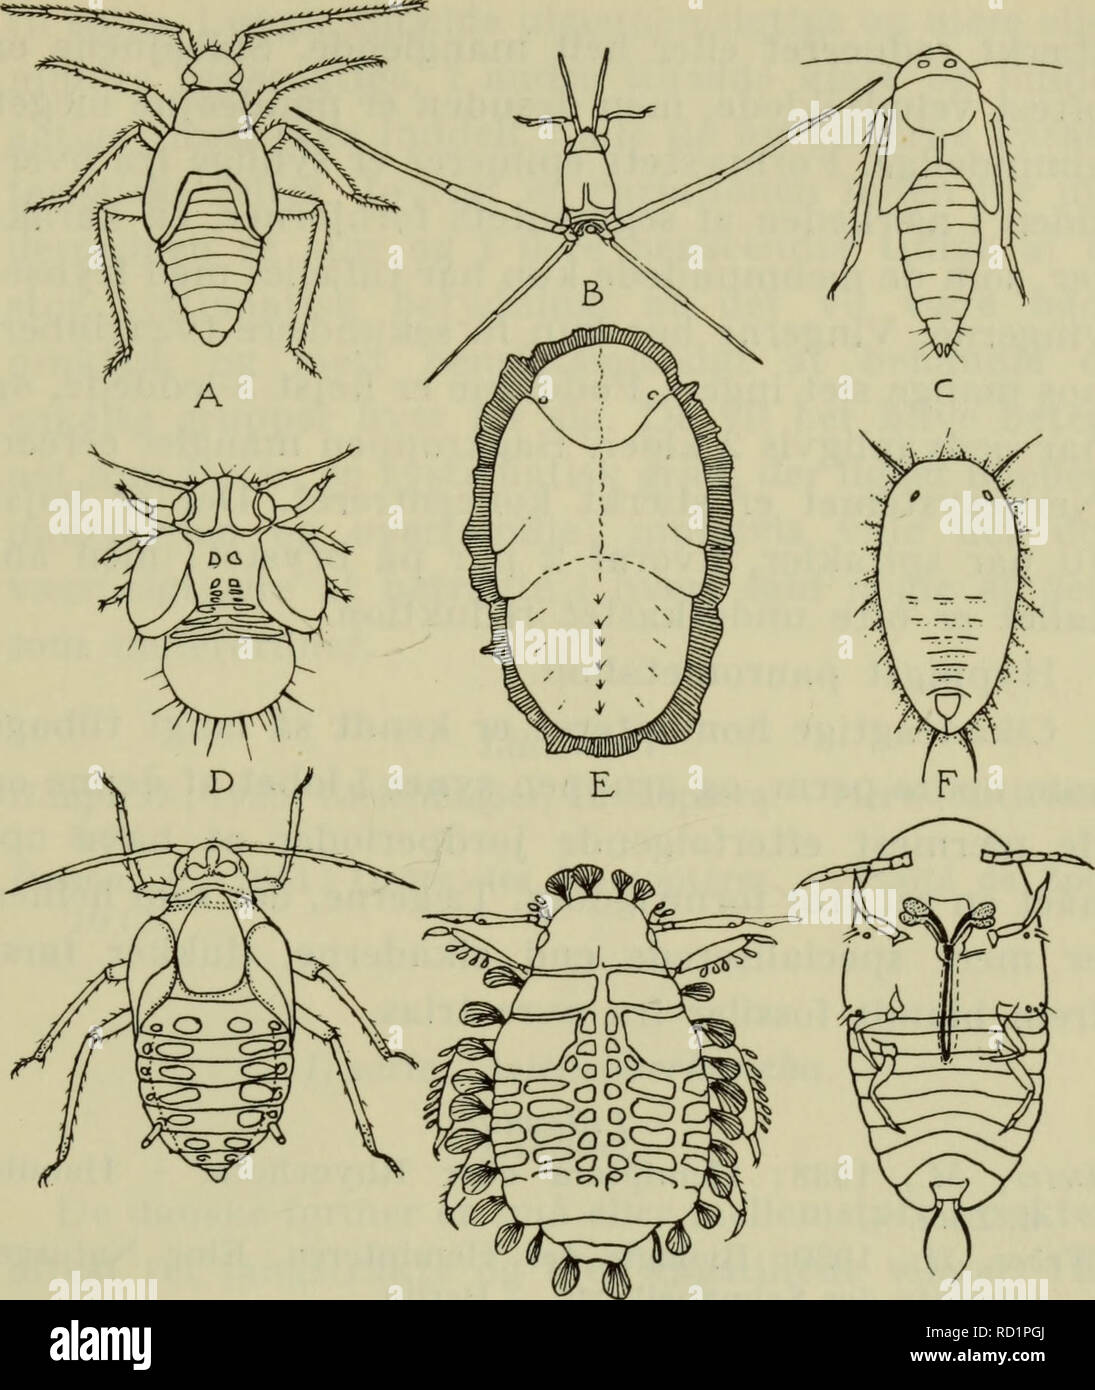 . Danmarks fauna; illustrerede haandbøger over den danske dyreverden... 193. G H r Fig. 66. Larver af næbmunde. A tæge (Plesiocoris rugicollis); B Damtæge (Gerris najas); C cikade (Gicadula sexnotata); D blad- loppe (Psylla pyricola); E bladloppe (Trioza viridula); F mellus (Trialeurodes vaporariorum); G vingebærende bladlus (Aphis fabae); H bladlus (Periphyllus testudinatus); I skjoldlus (Goccus hesperi- dum). A-H set fra oven, I fra undersiden. (Her omtegnet fra for- skellige kilder). mødes snabelskedens rande, der fortil dækkes af over- læben, på organets ventralt vendende side; hos mange h Stock Photo